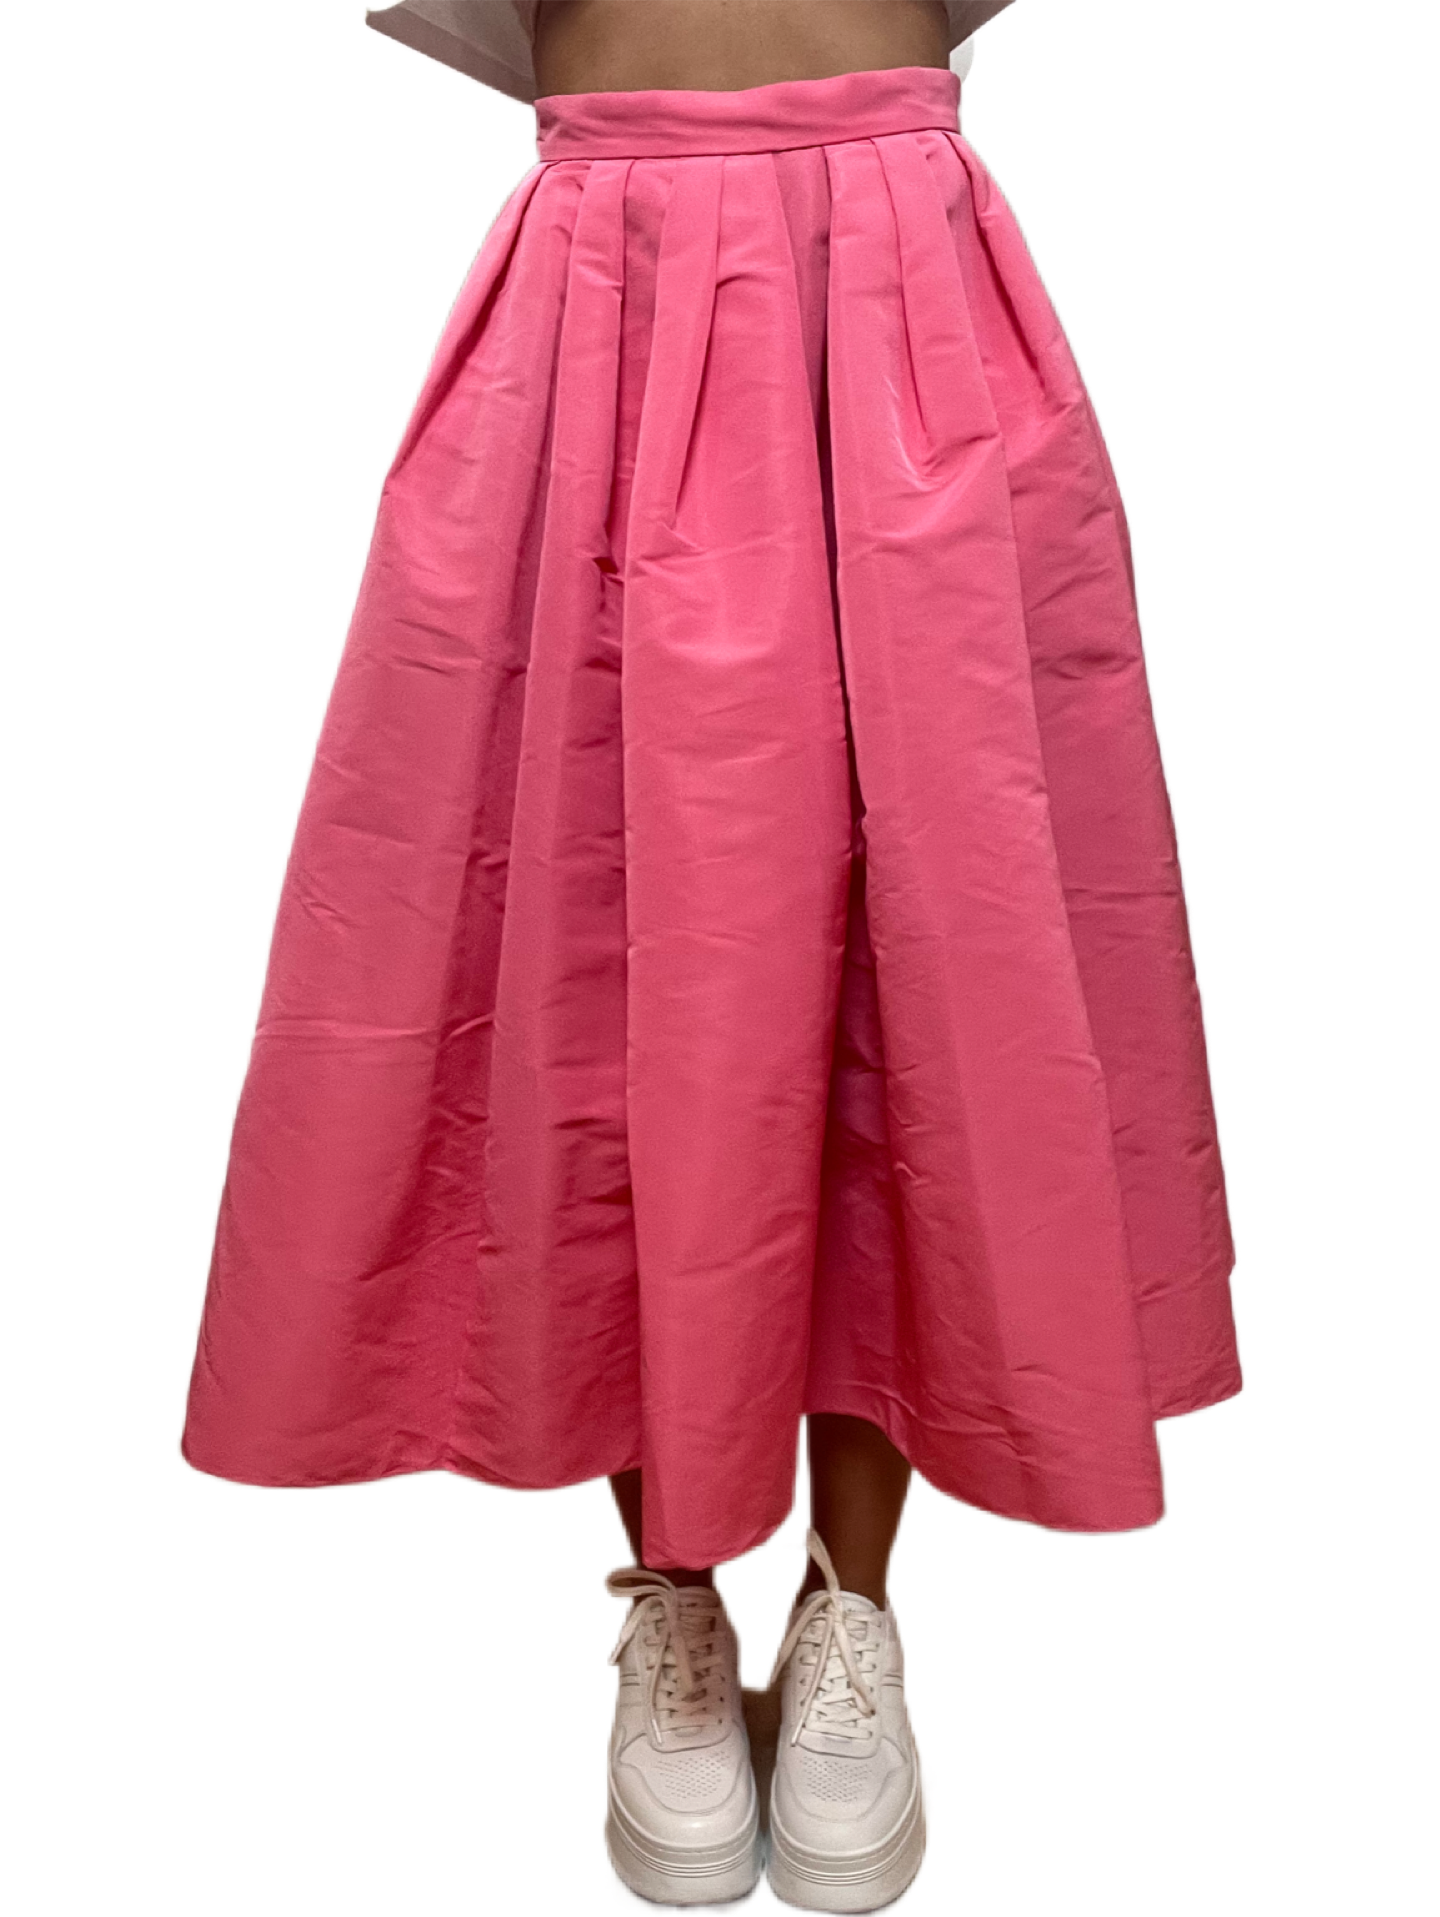 Alexander McQueen Pink 3/4 Length Skirt. Size: 40